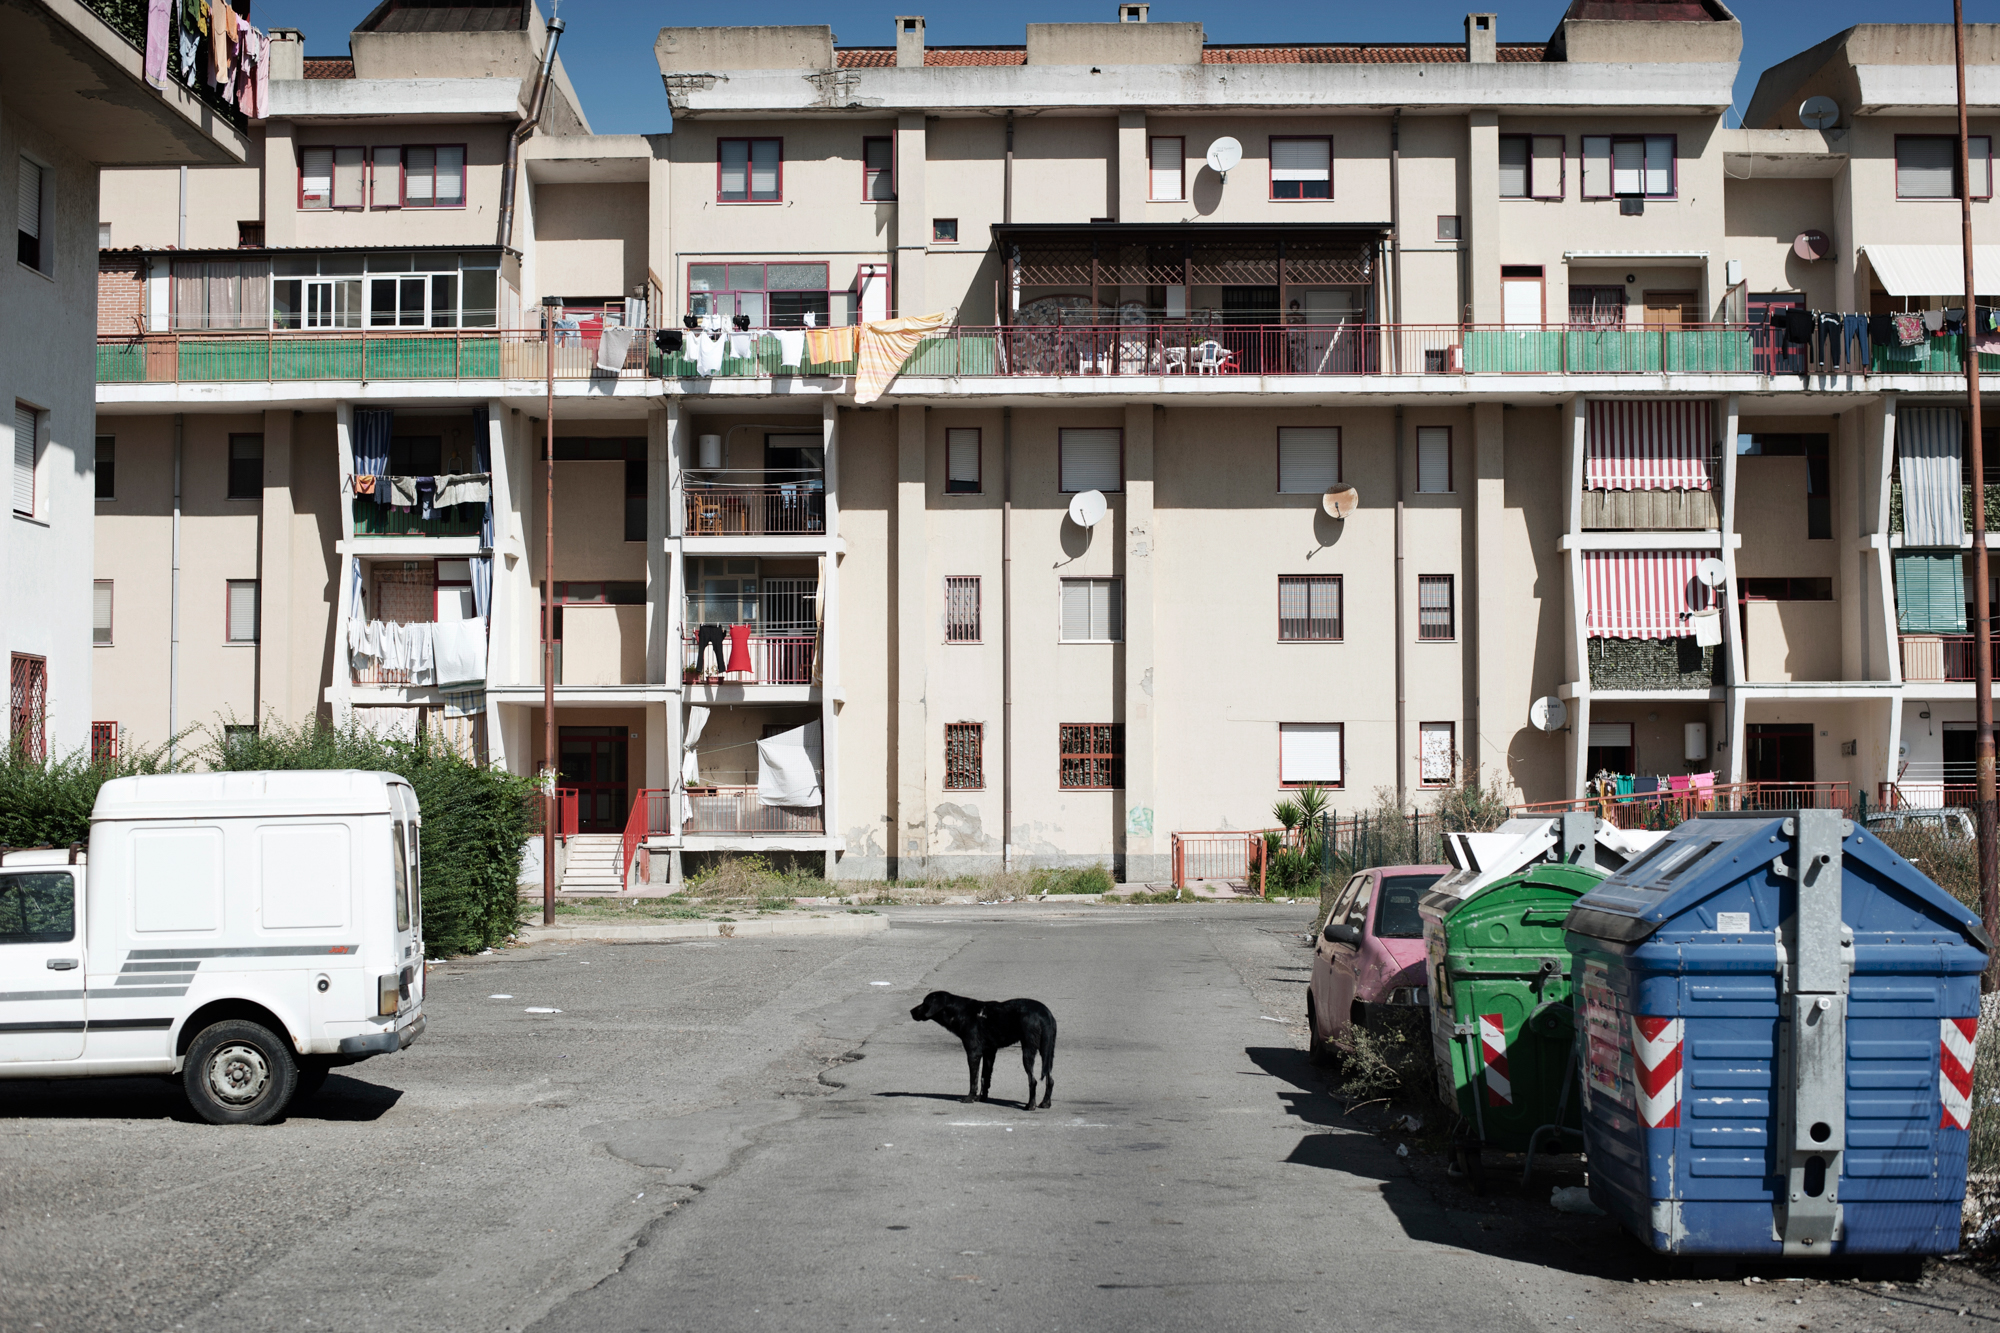  Italia. Crotone 2013: Queste palazzine di edilizia popolare (Aterp) nella periferia di Crotone fanno parte dei siti “altamente contaminati”. 